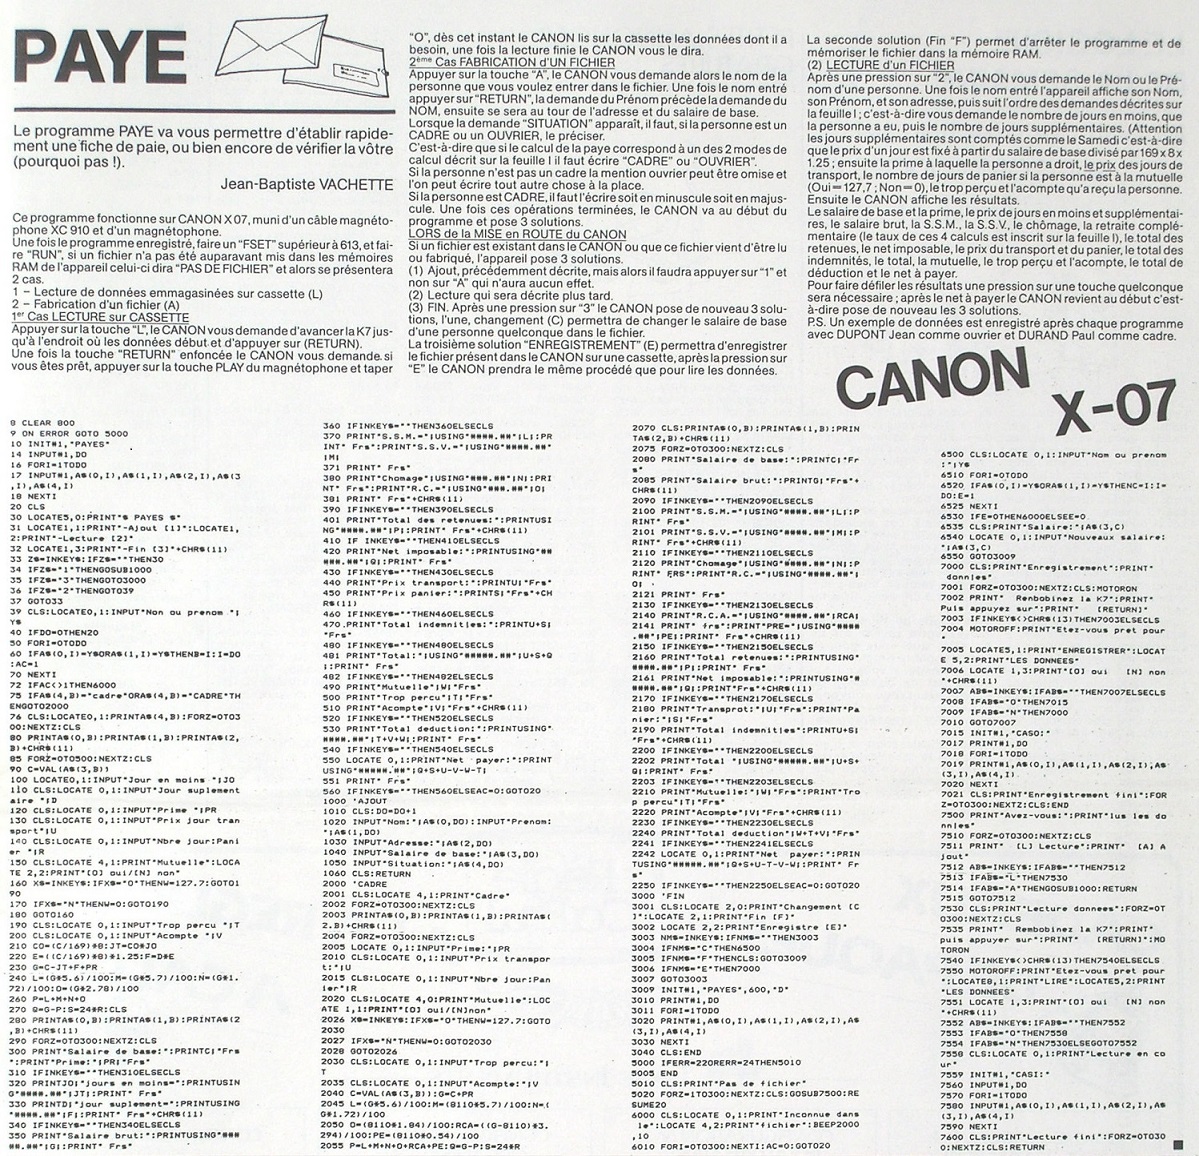 Listing d'un programme de paye pour CANON X-07 qui tient sur une page... (HEBDOGICIEL n° 29-du 27/04/1984, p. 19)